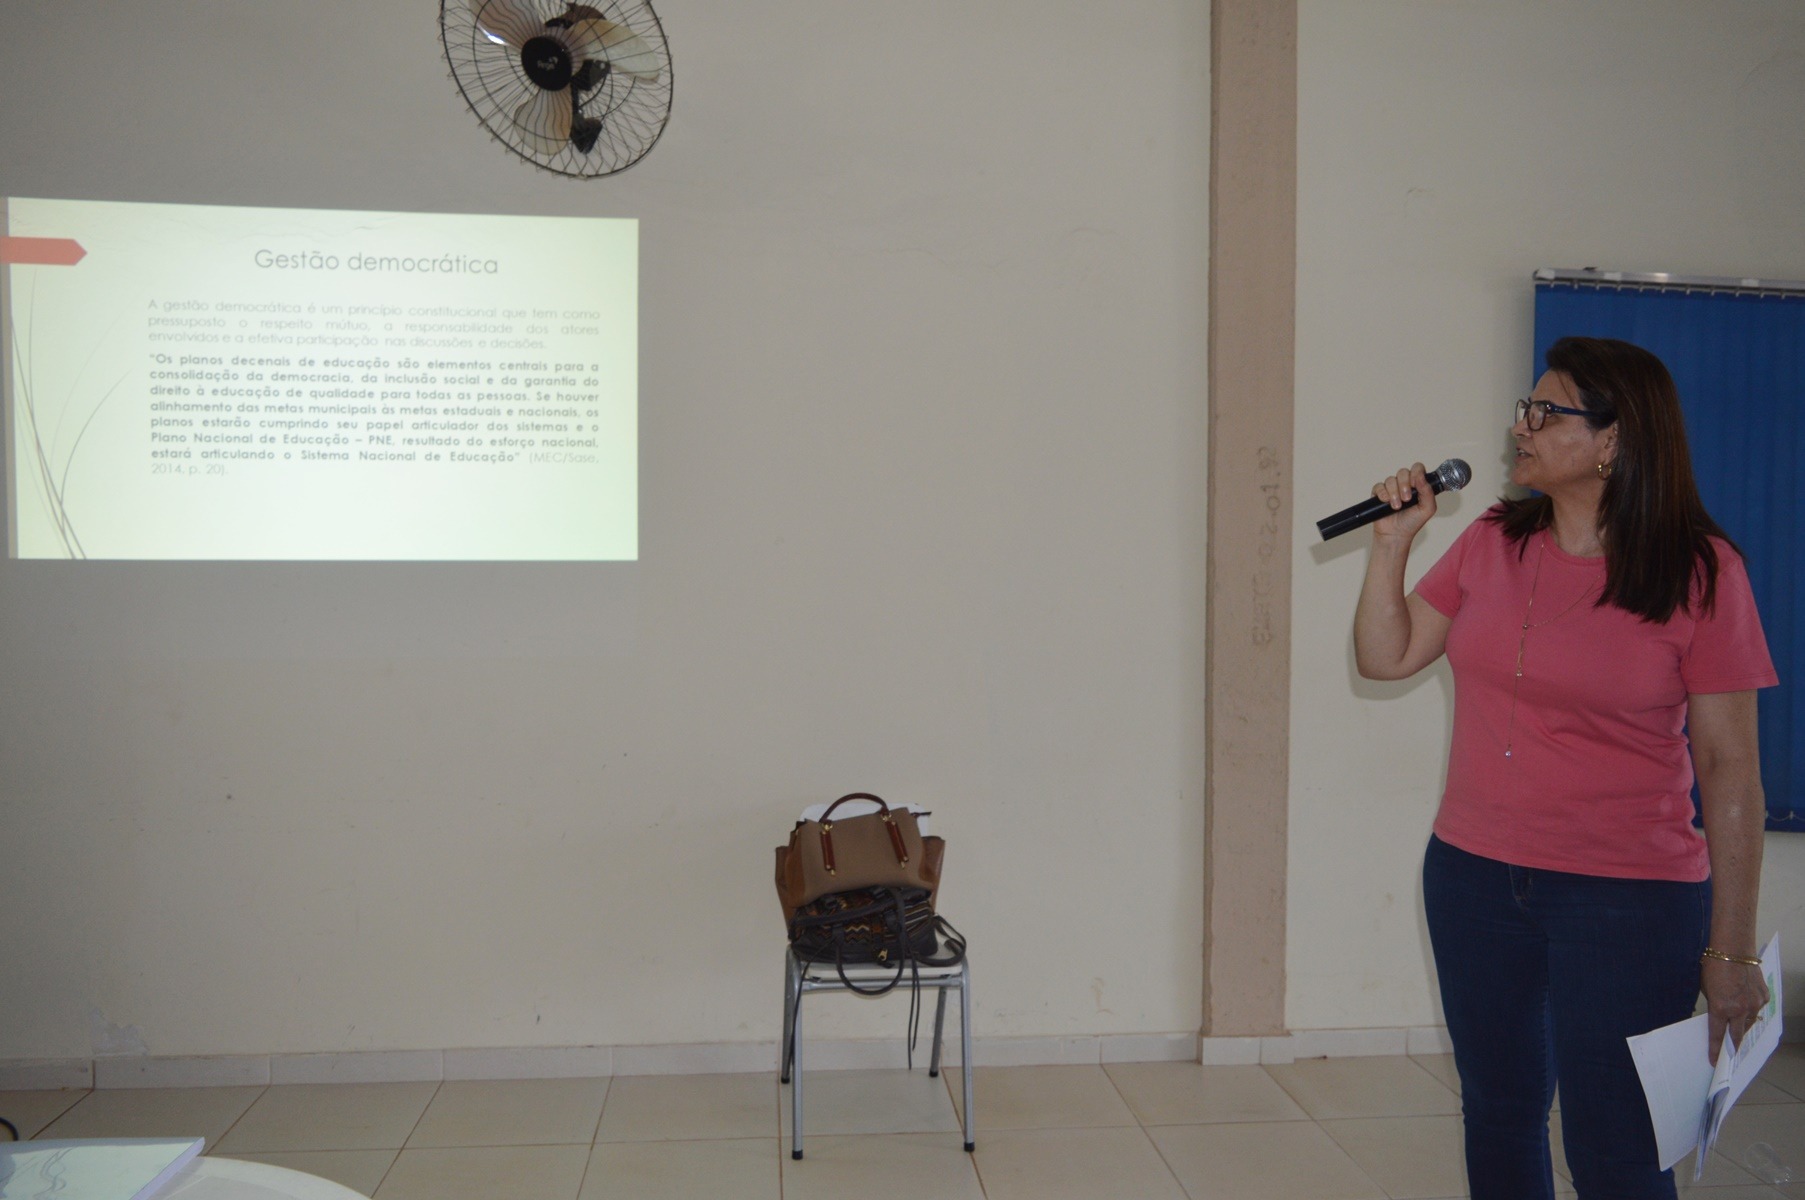 Silvana Lago Velozo falou sobre a importância da gestão democrática dentro de uma escola / Foto: Moreira Produções